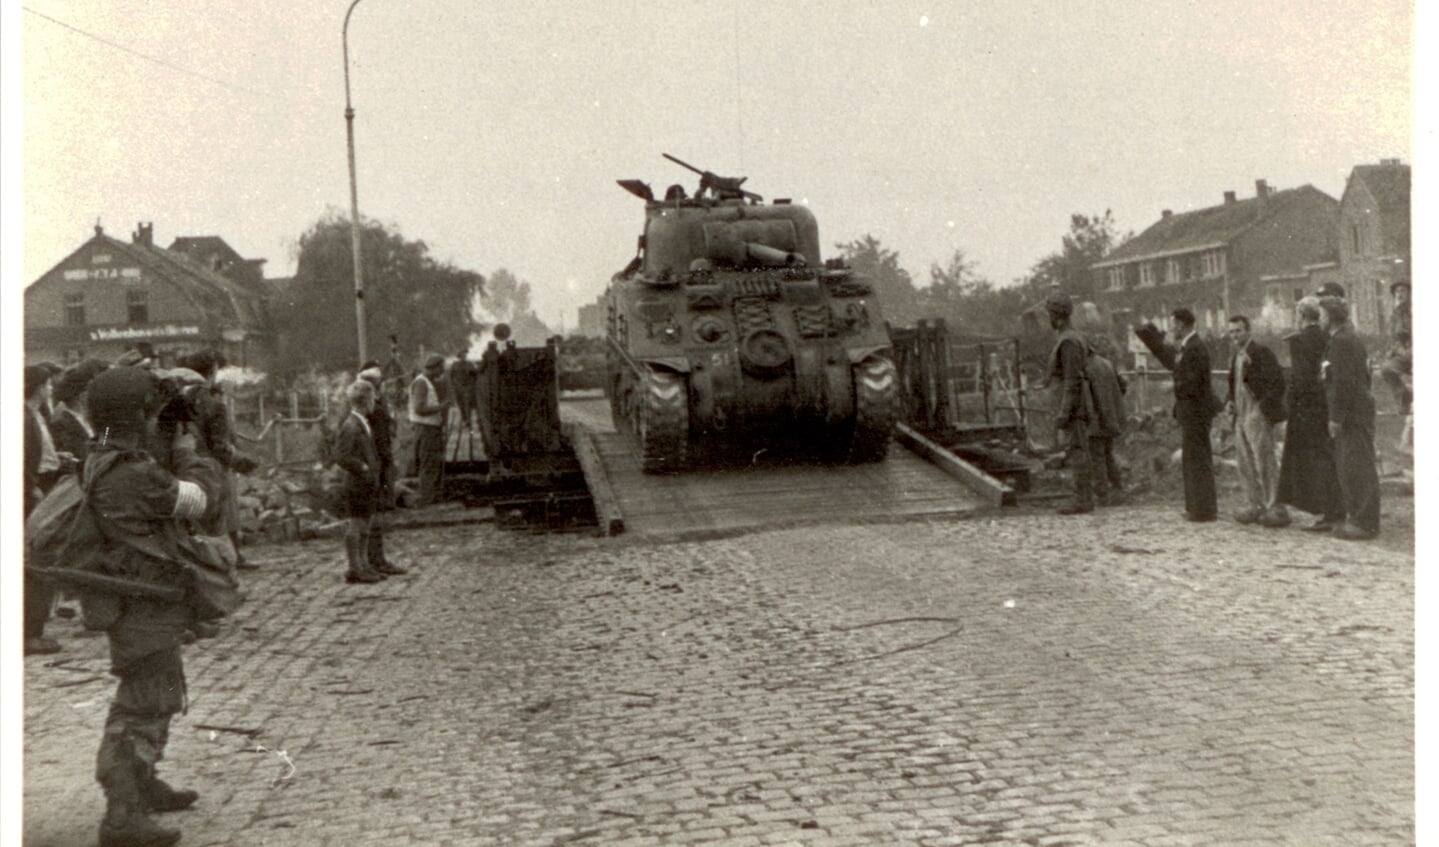 19 september 1944, ’s morgens vroeg is na een nacht doorwerken de baileybrug klaar en kunnen de geallieerden door naar Arnhem.